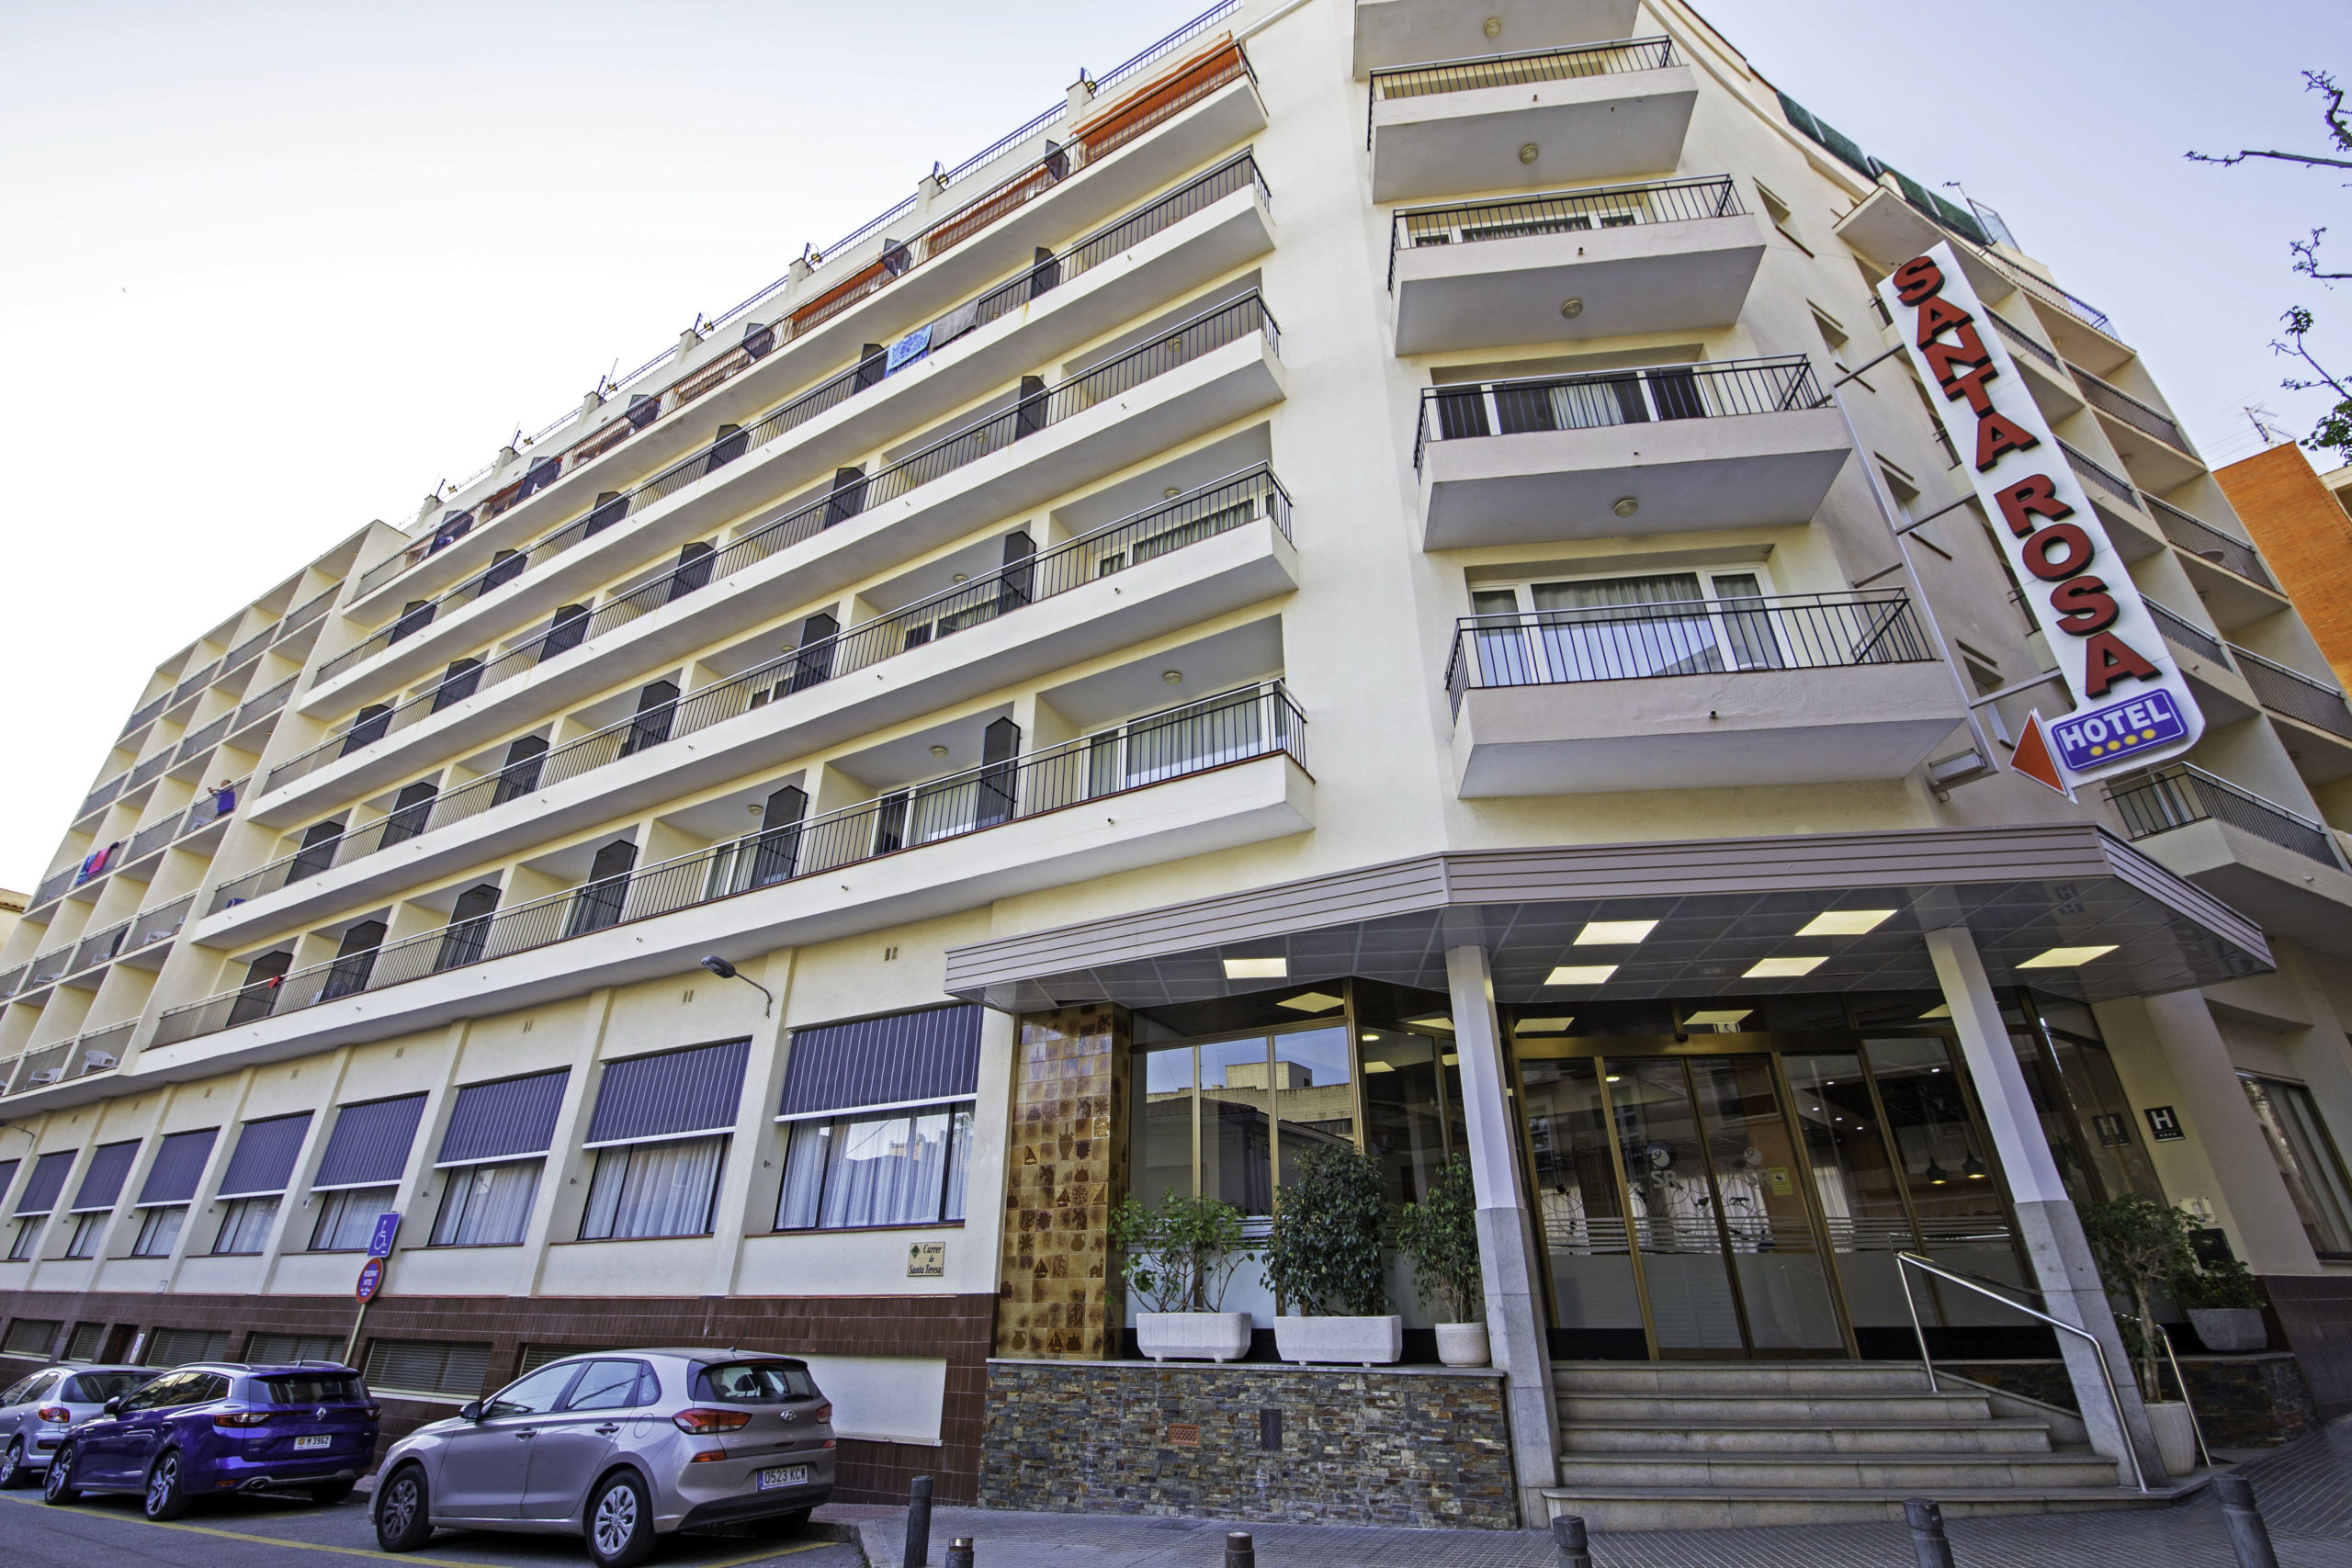 ​Pierre & Vacances abre el Hotel Lloret Santa Rosa